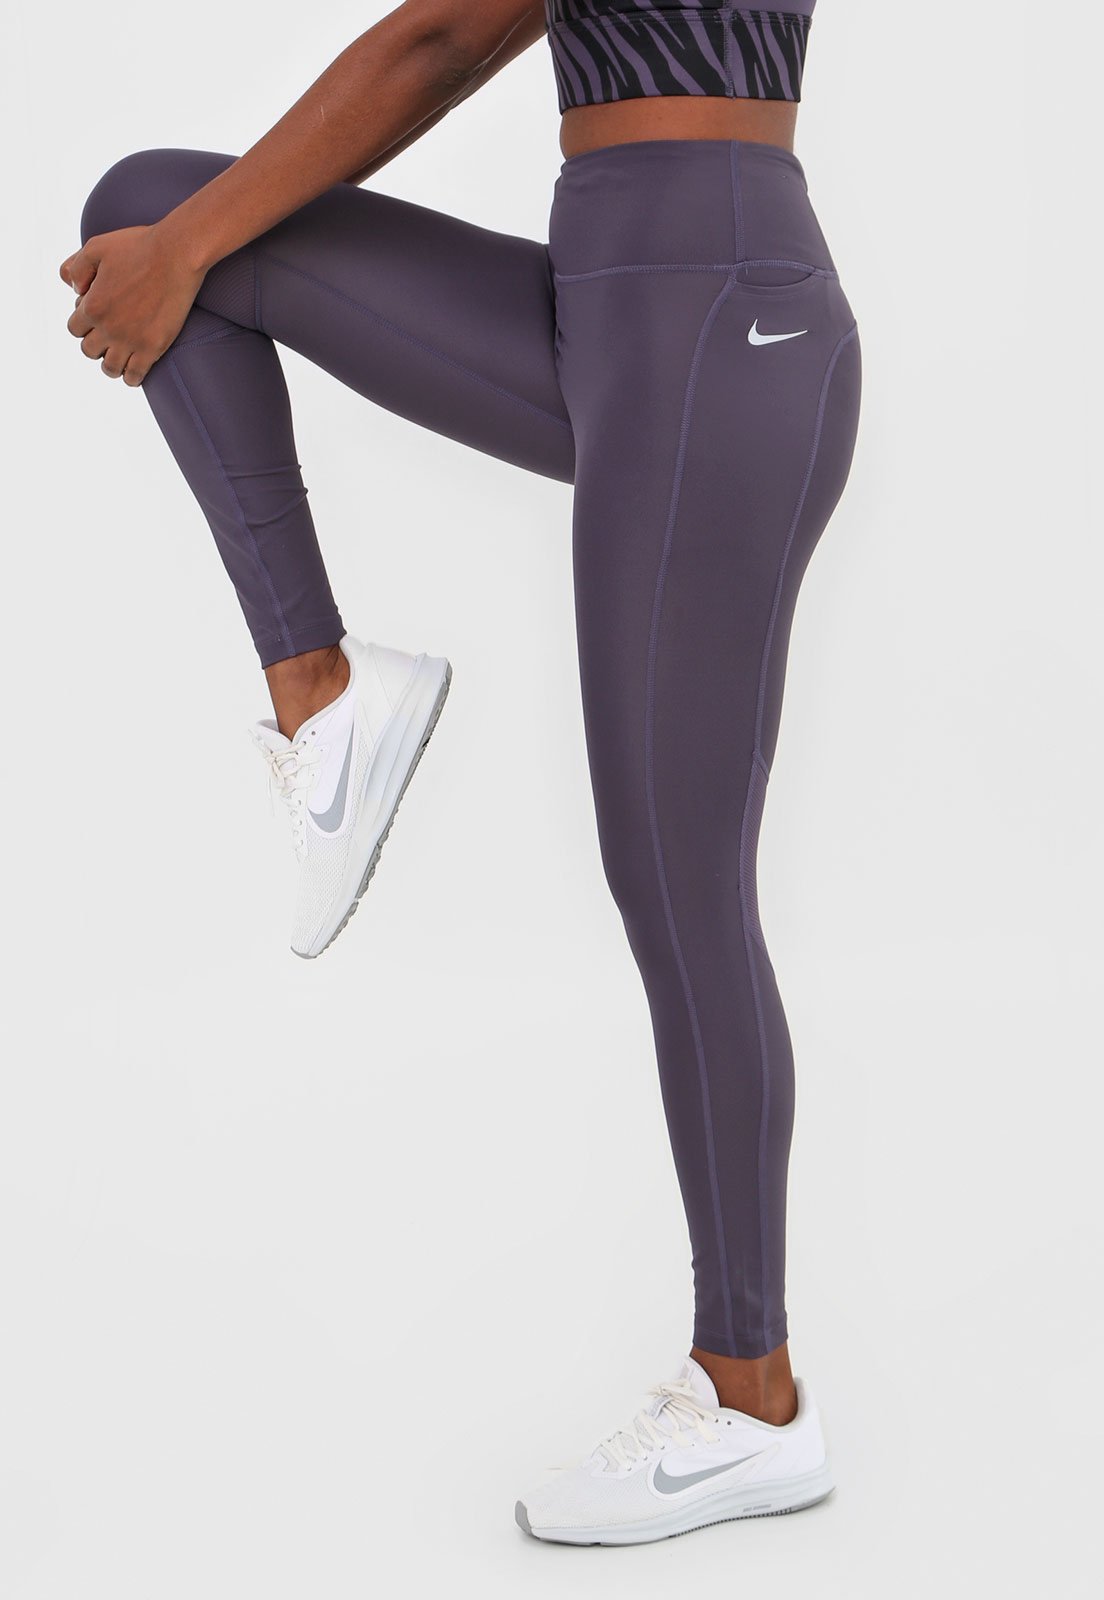 Legging Nike Fast Tight Hybrid Feminino